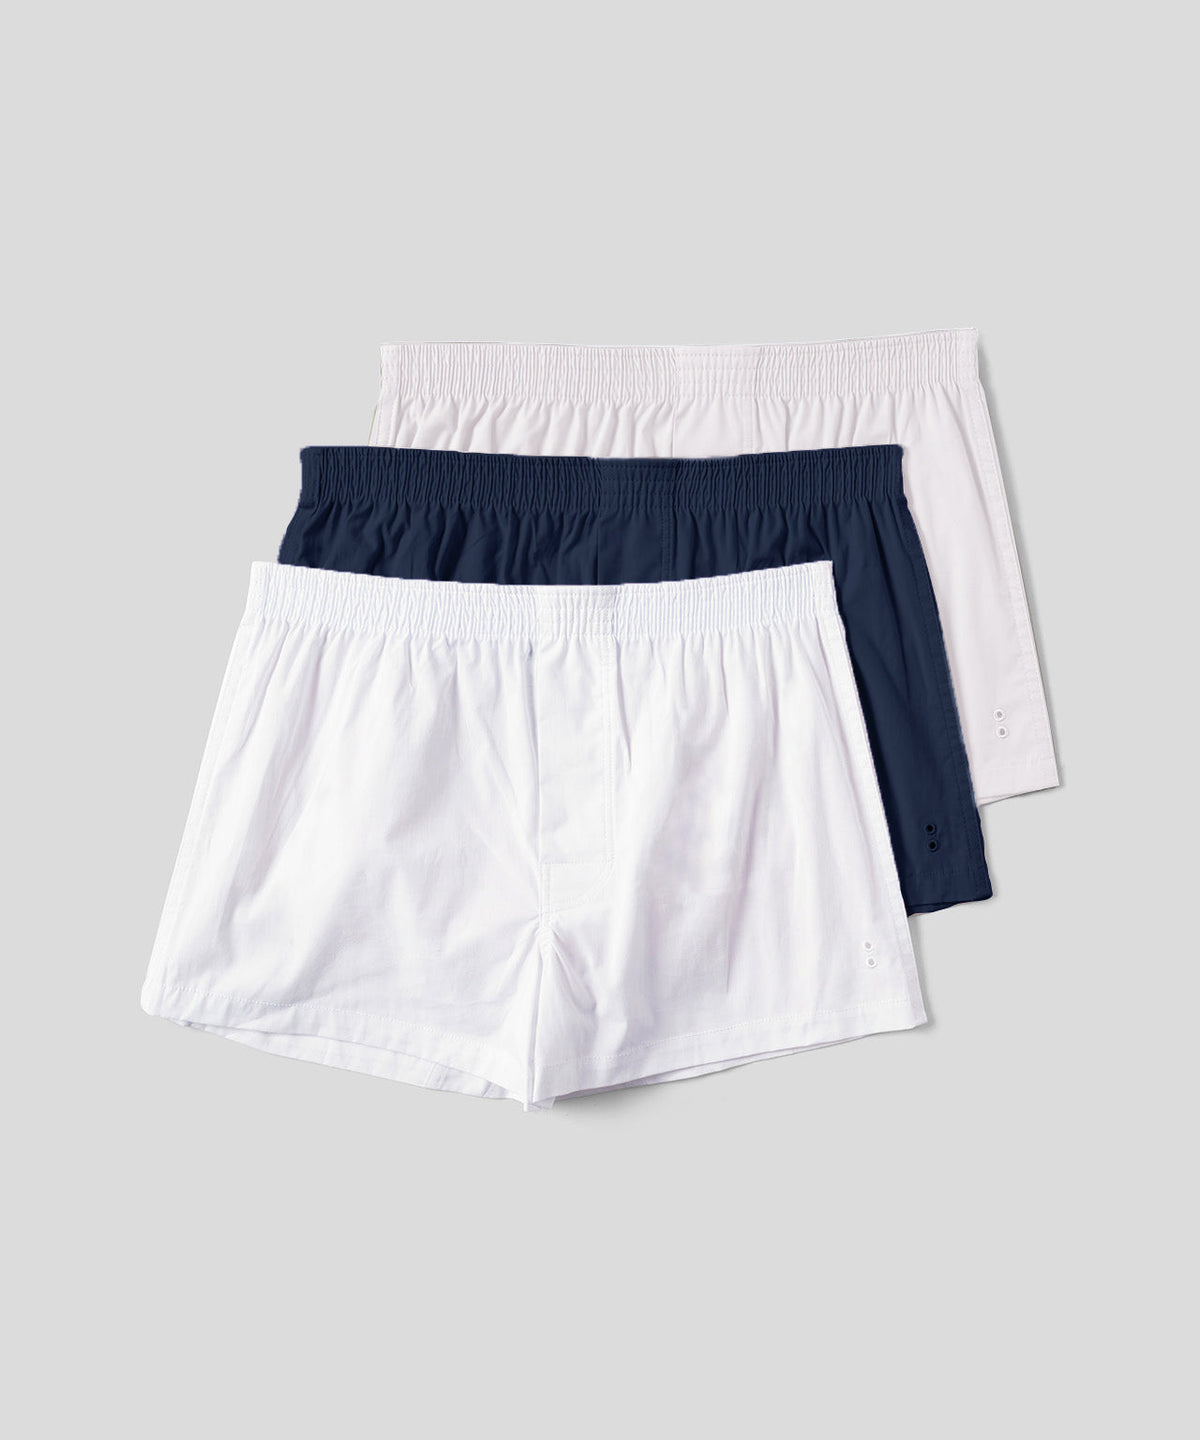 Plain Boxer Briefs Yellow Men Cotton Underwear at Rs 45/piece in